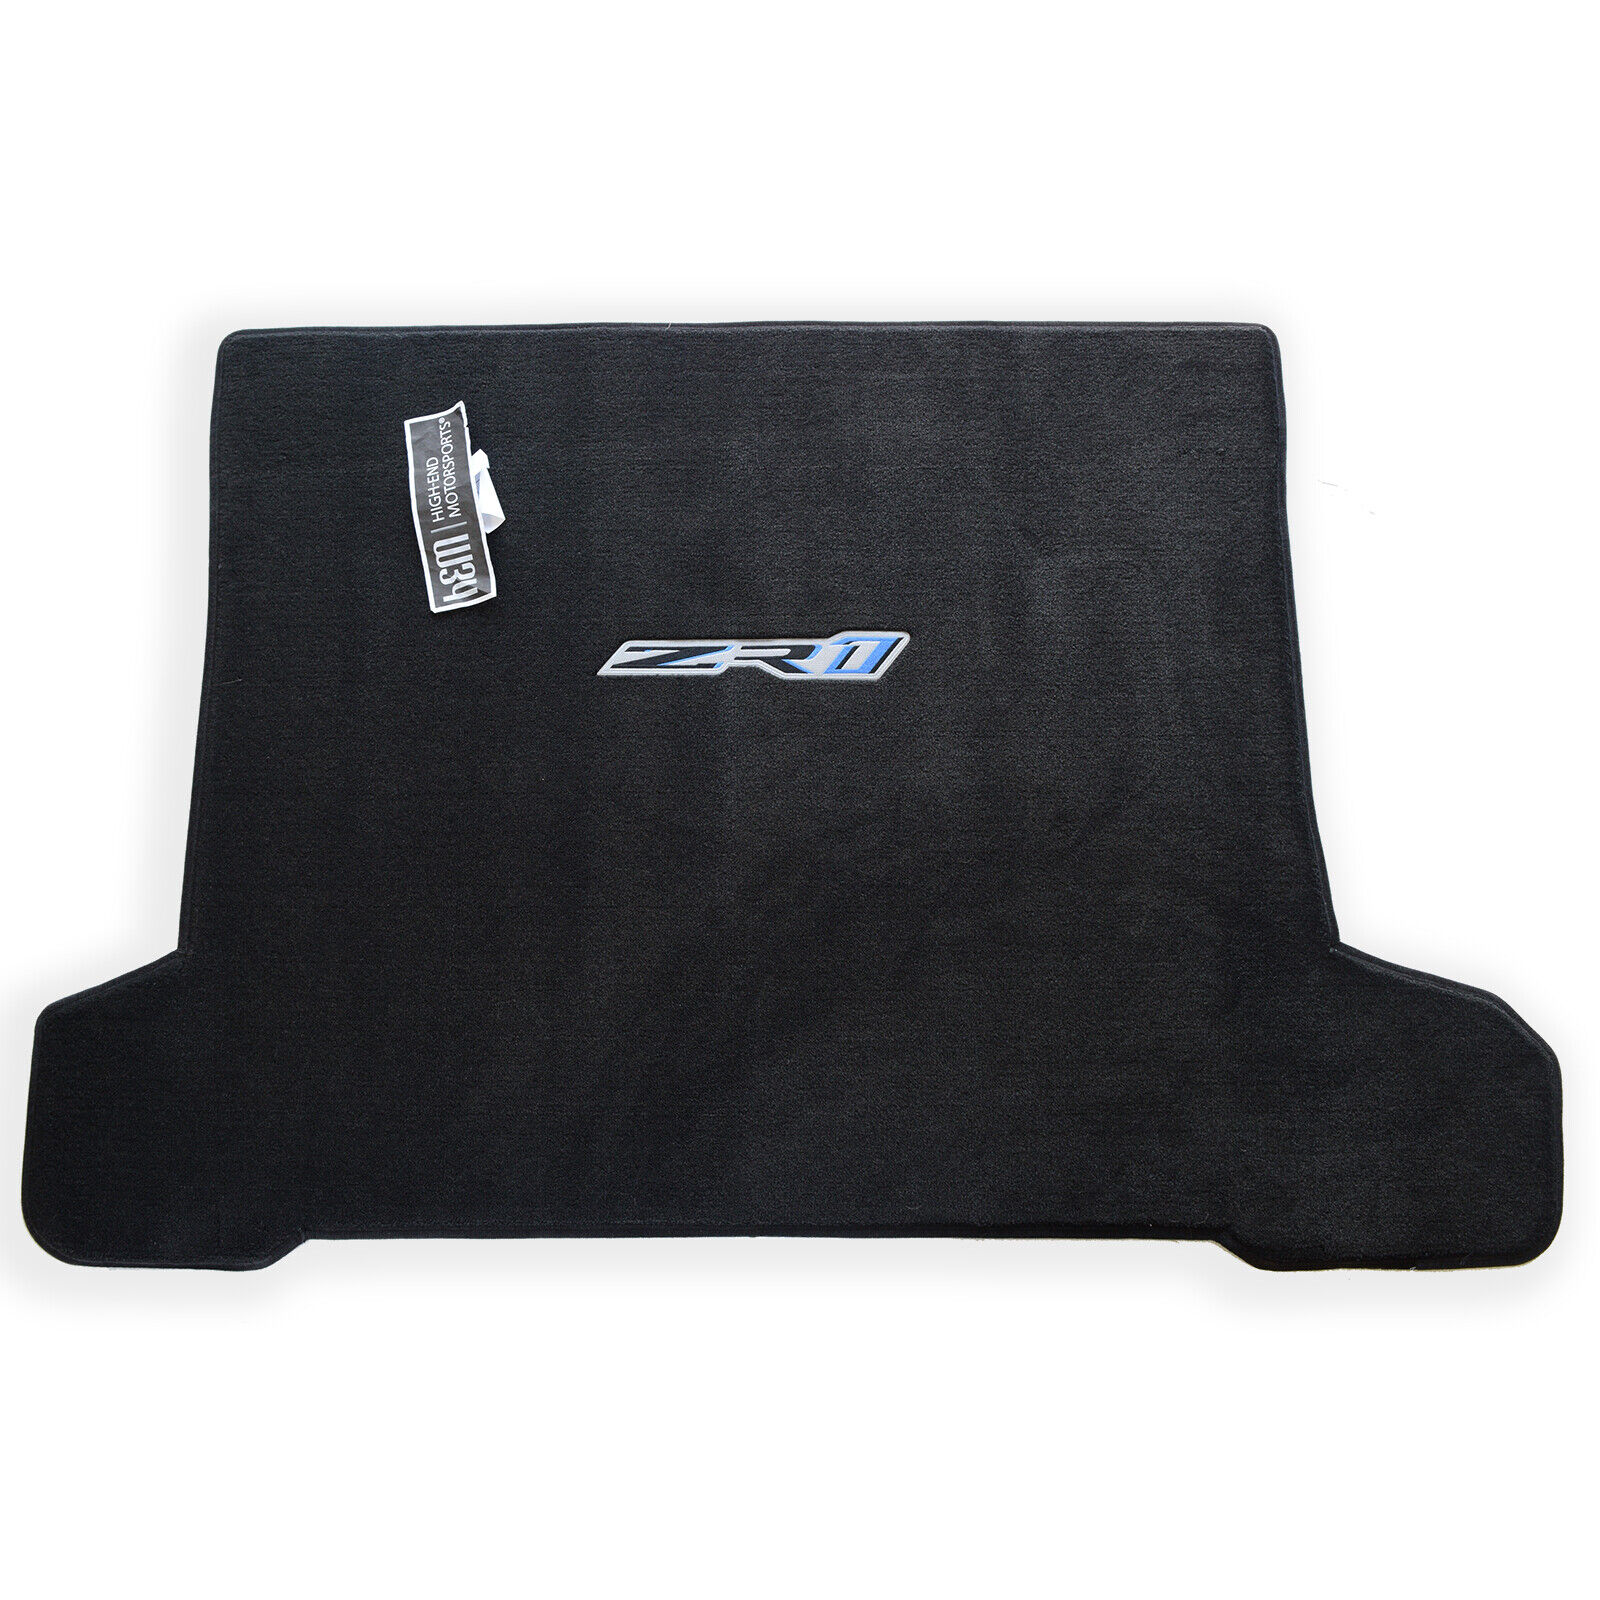 2019 Chevrolet Corvette ZR1 Cargo Floor Mat Blue ZR1 Logo GM Licensed Quality